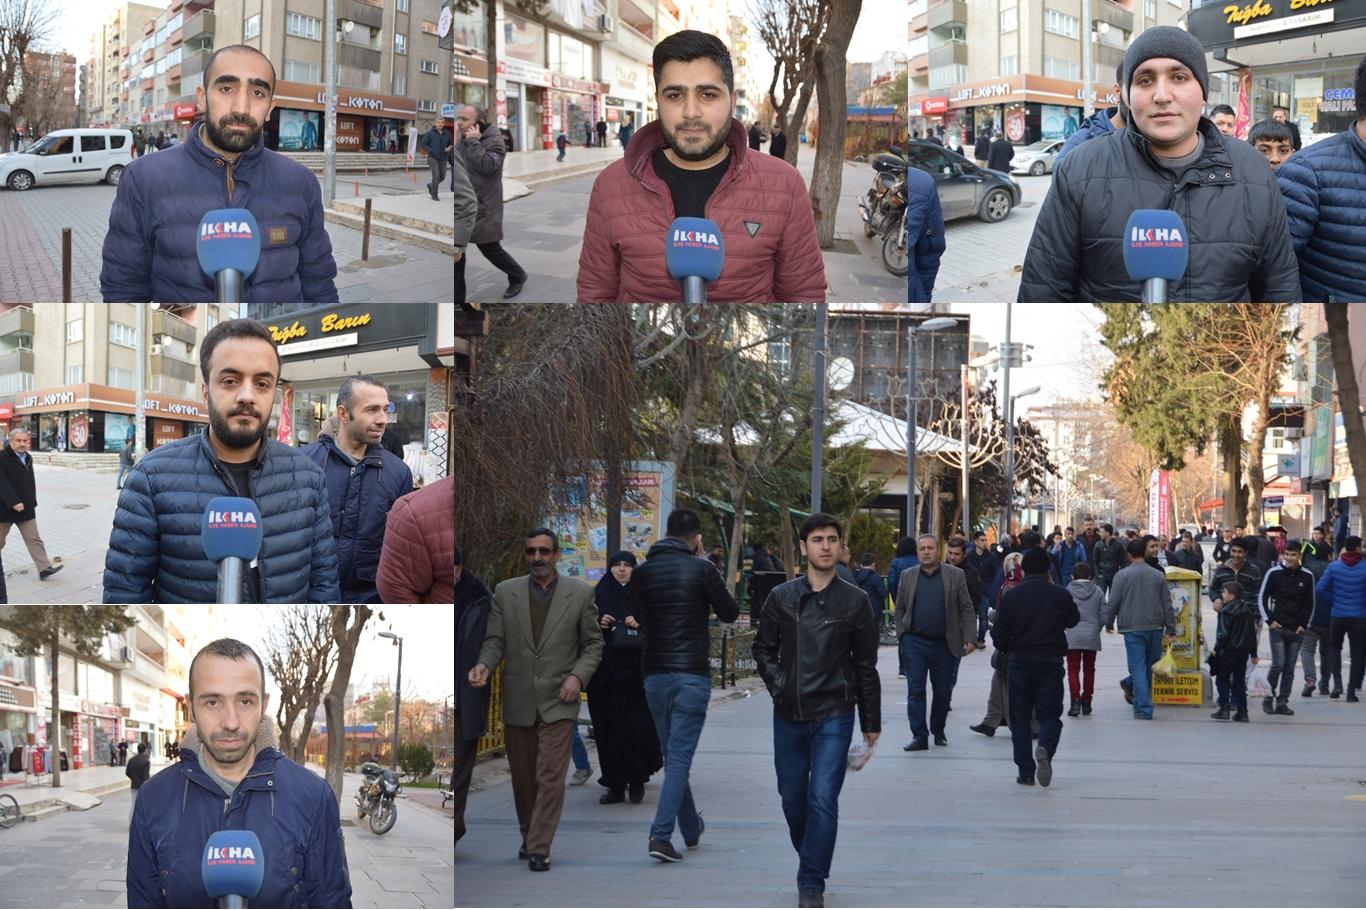 "İŞKUR alımlarında 35 yaş sınırının kaldırılmasını istiyoruz"